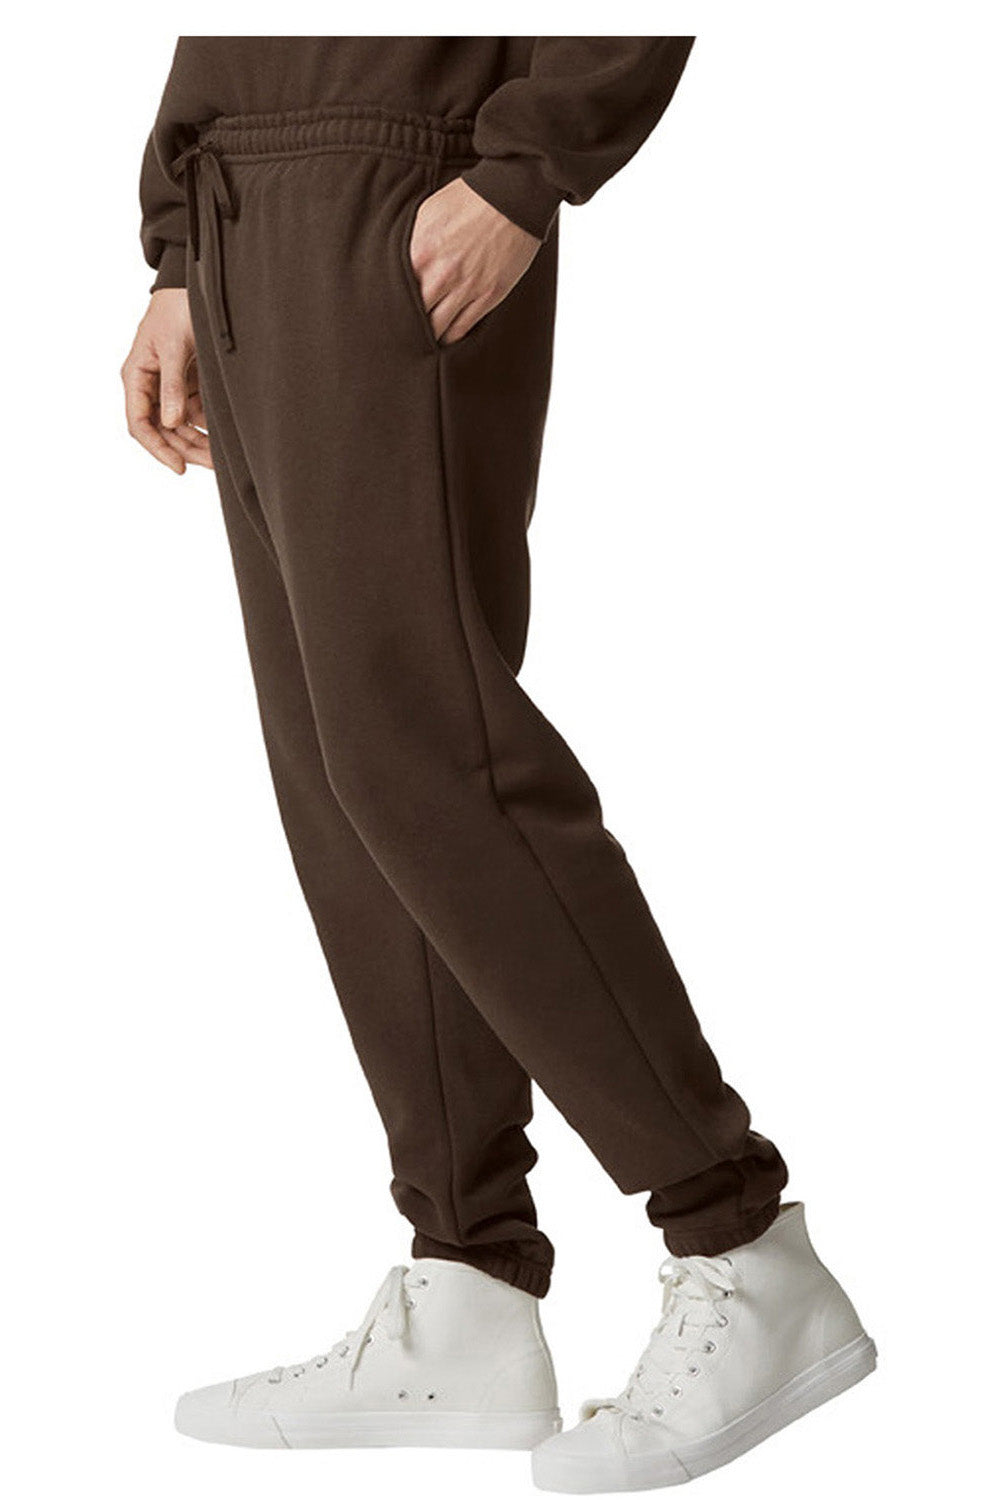 American Apparel RF491 Mens ReFlex Fleece Sweatpants w/ Pockets Brown Model Side